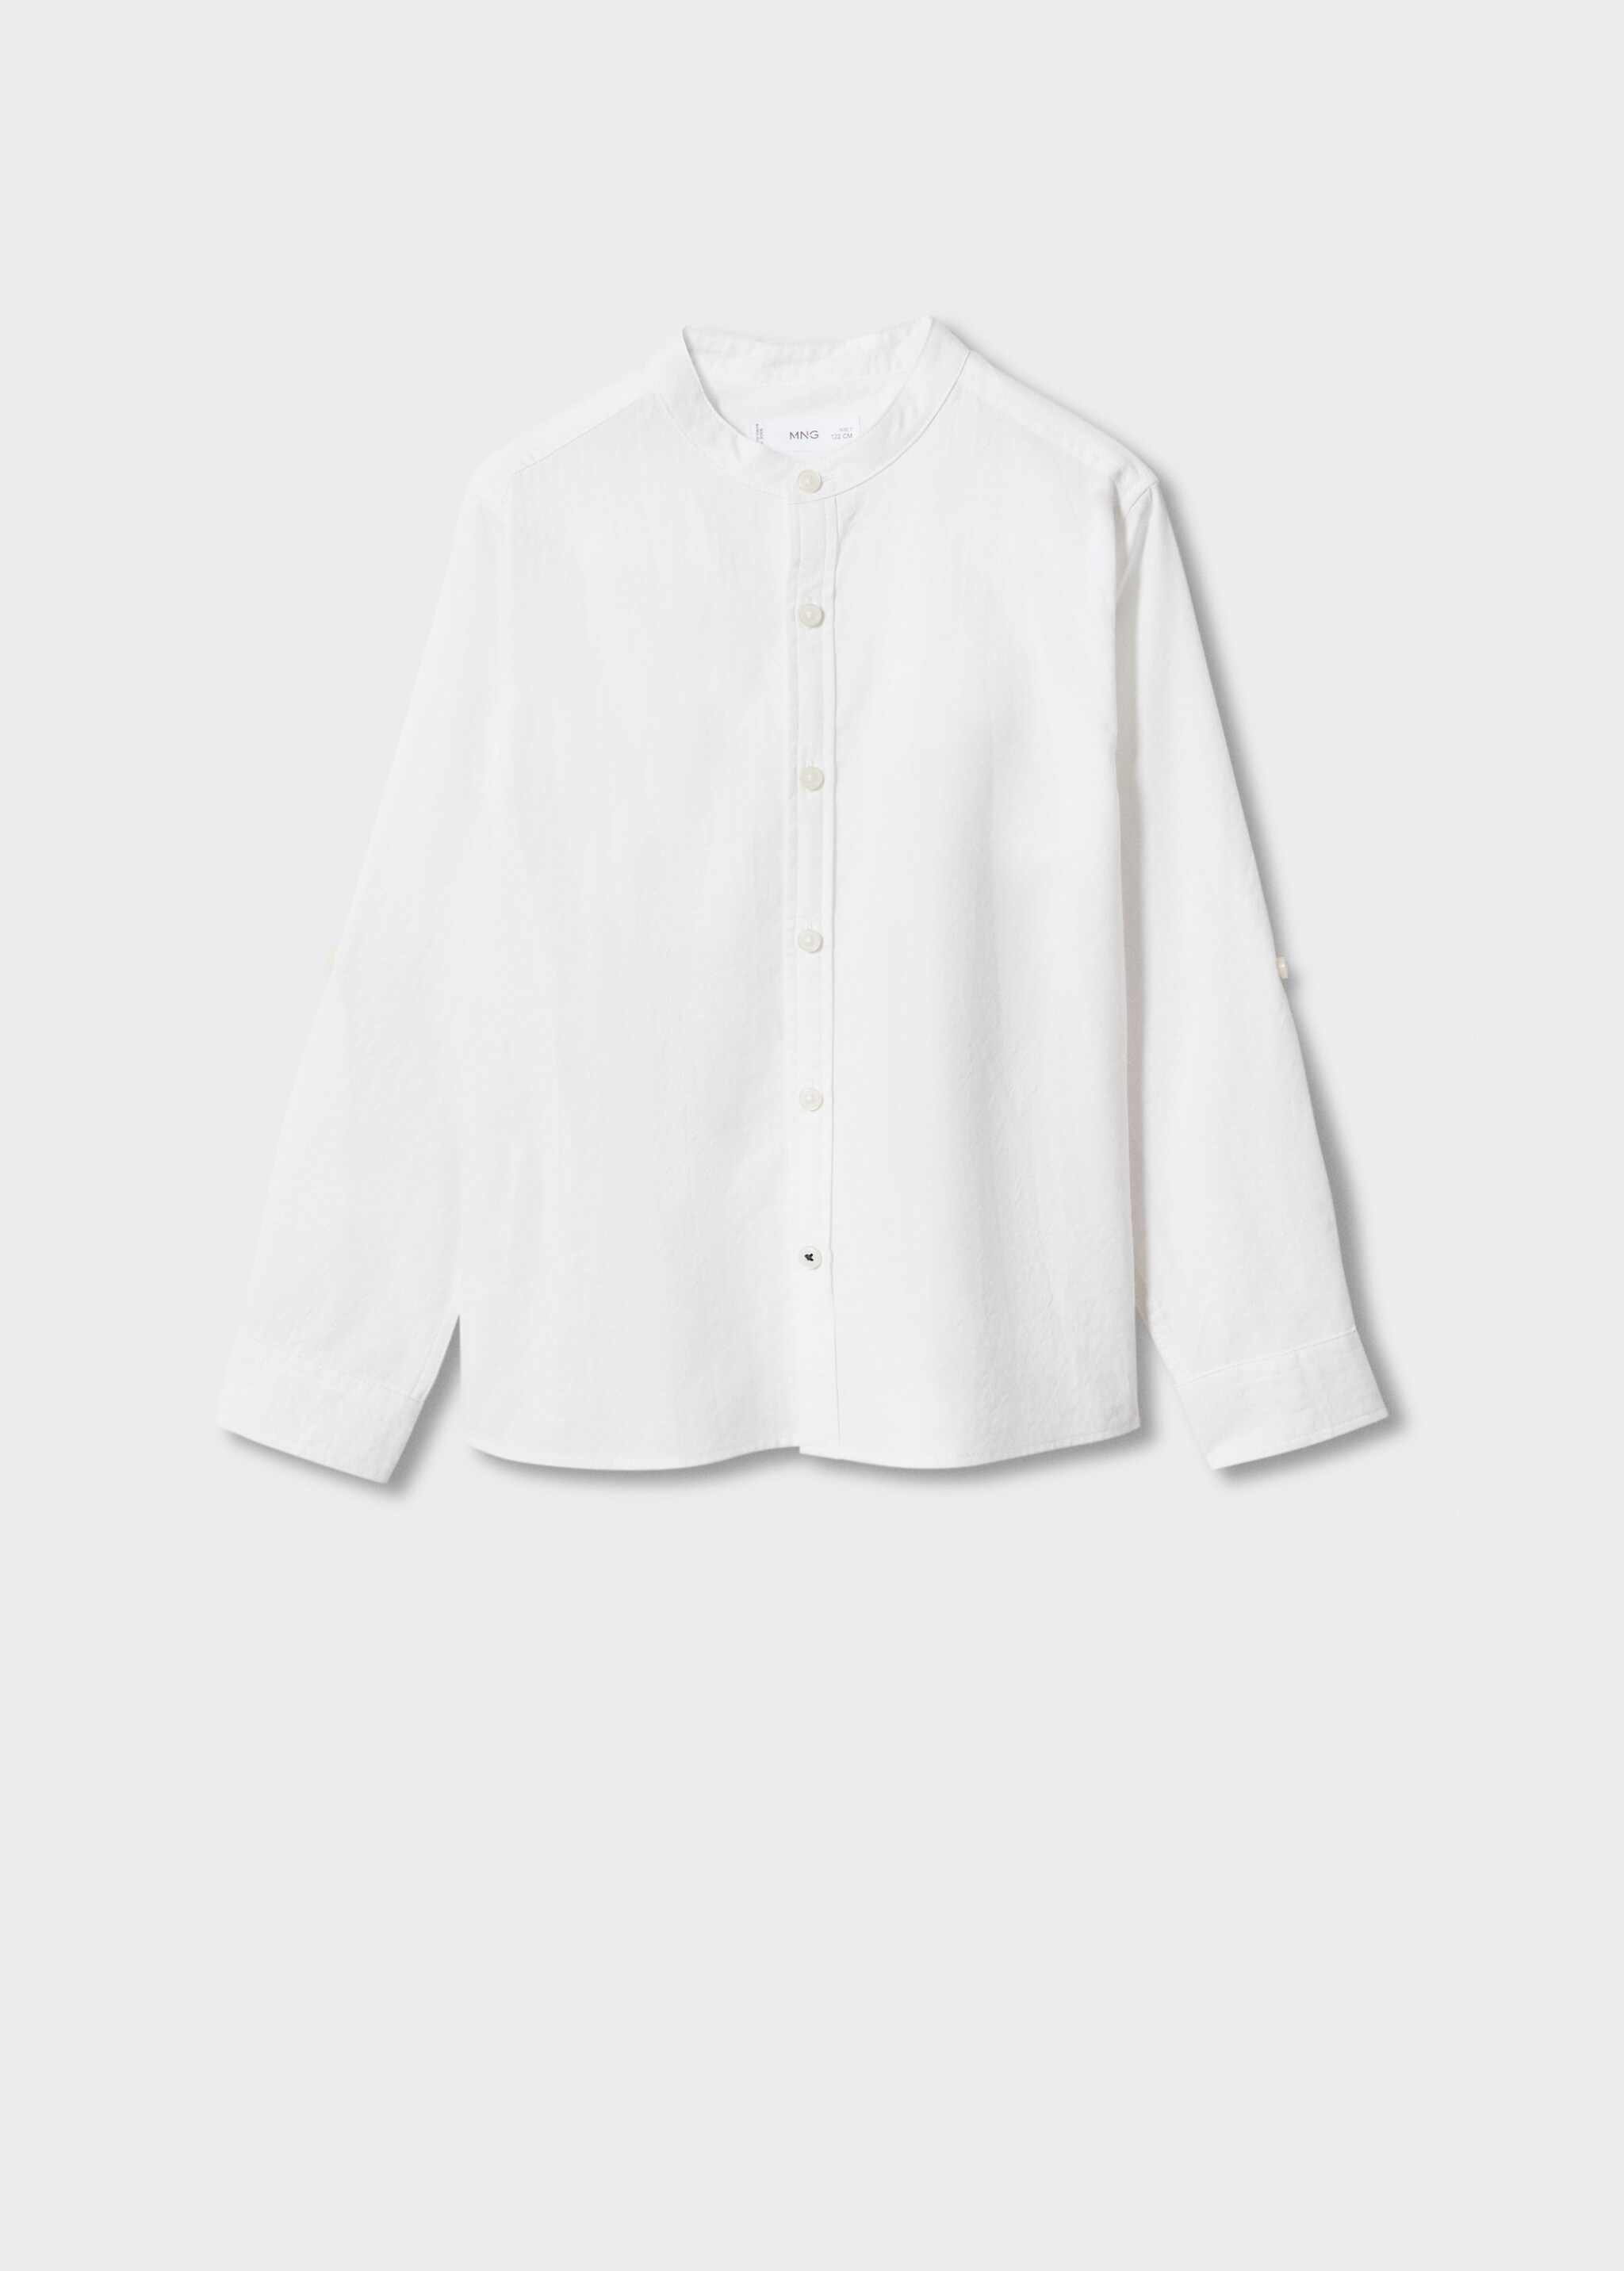 Mao krageskjorte - Artikkel uten modell